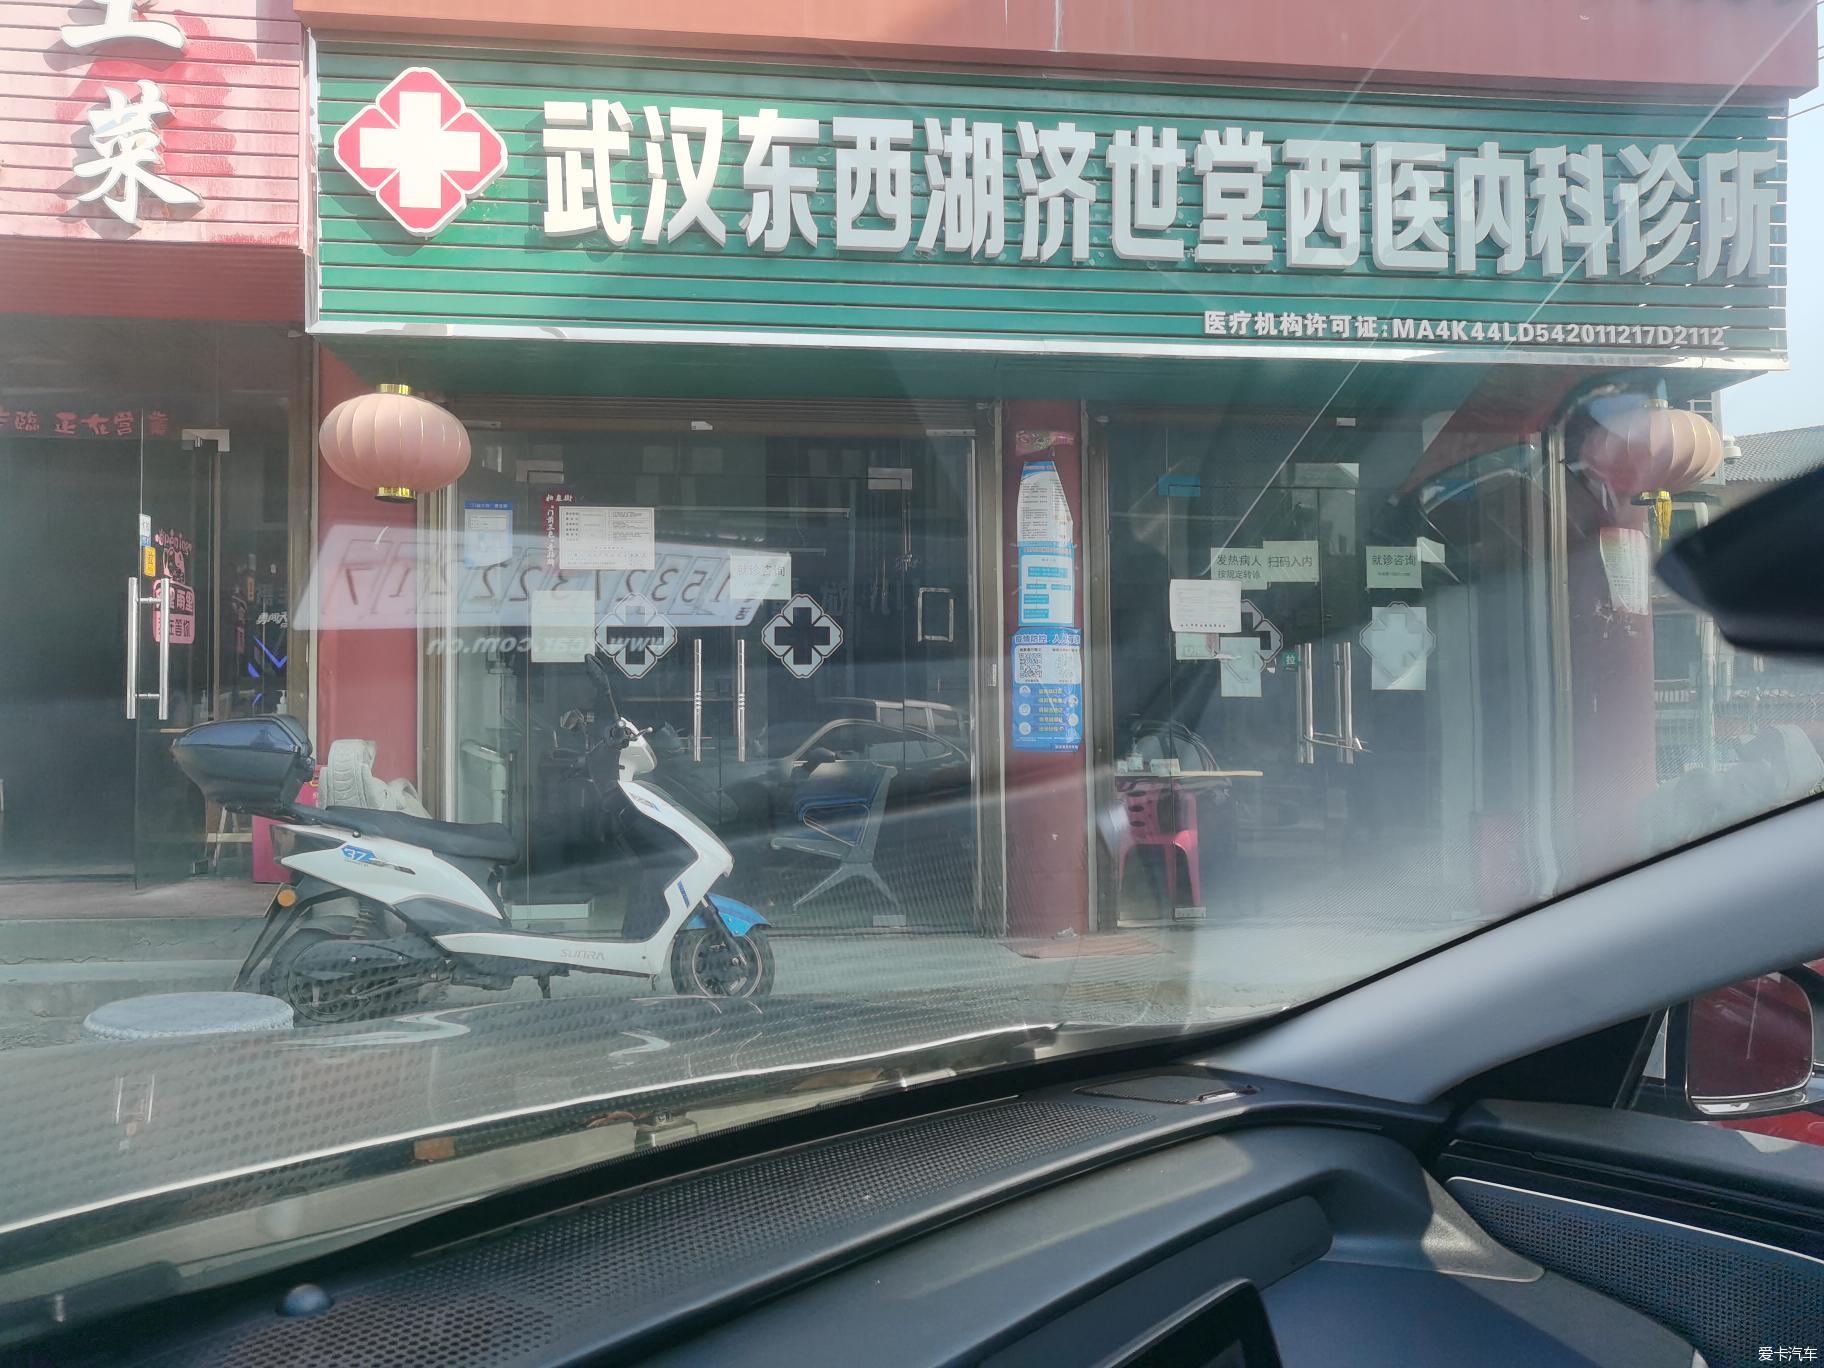 上海大众车友会烤全羊活动第三次探路